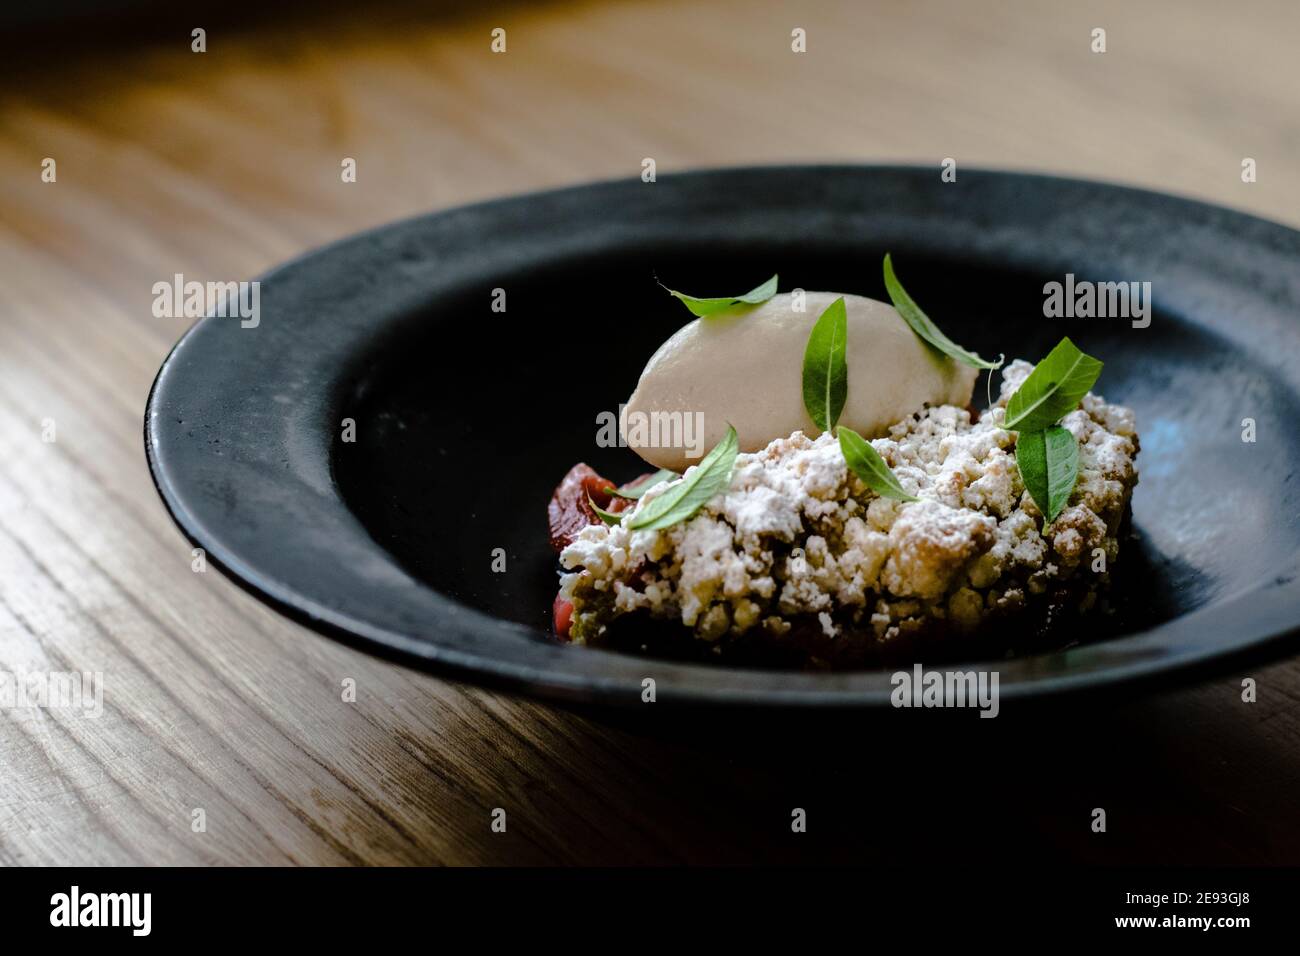 Assiette de sorbet et de tarte au rhubarbe recouverte de feuilles de menthe dans un plat noir sur une table en bois dans un restaurant Banque D'Images